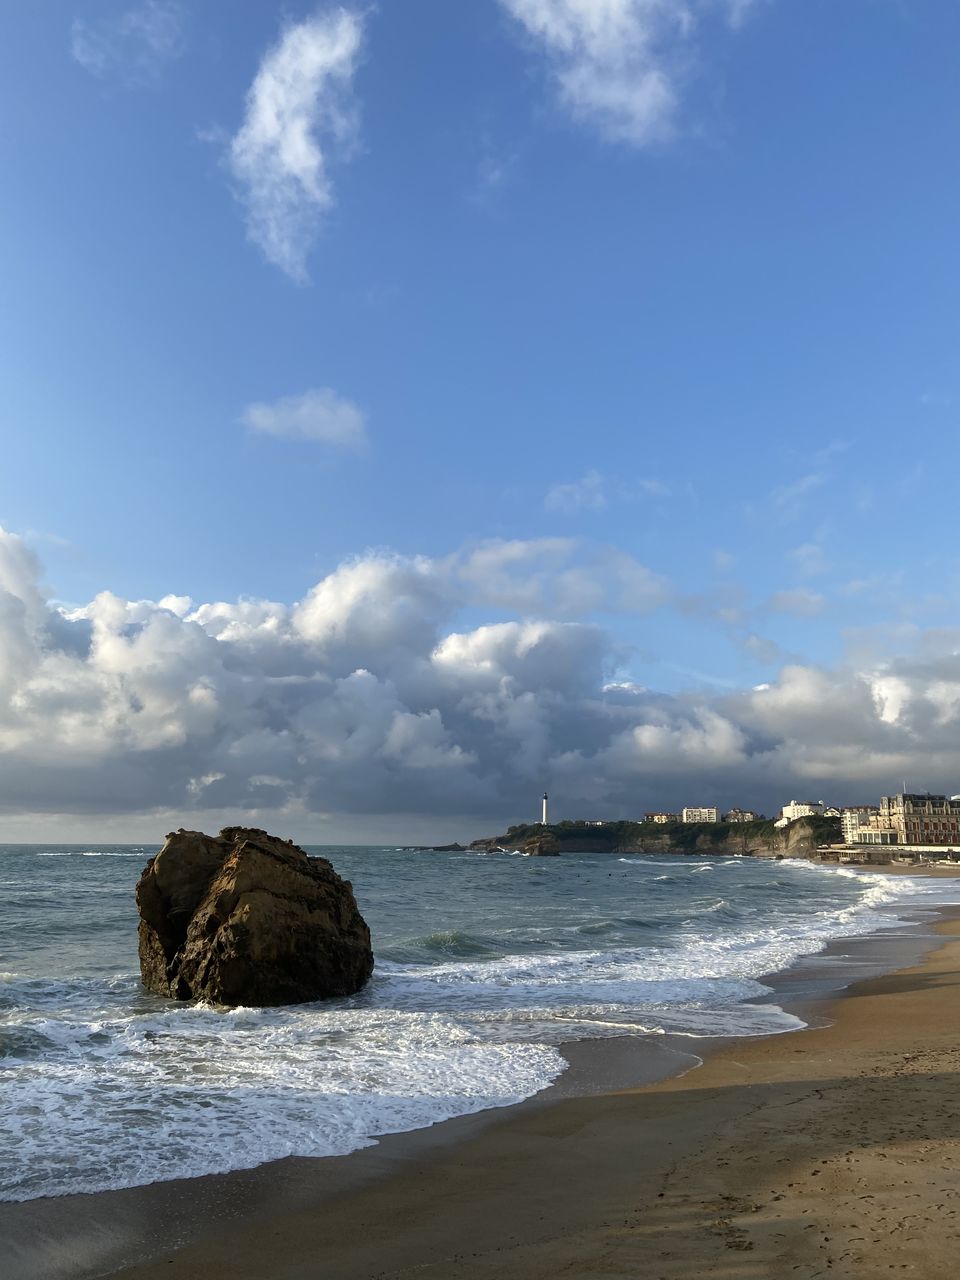 ROCKS ON BEACH AGAINST SKY